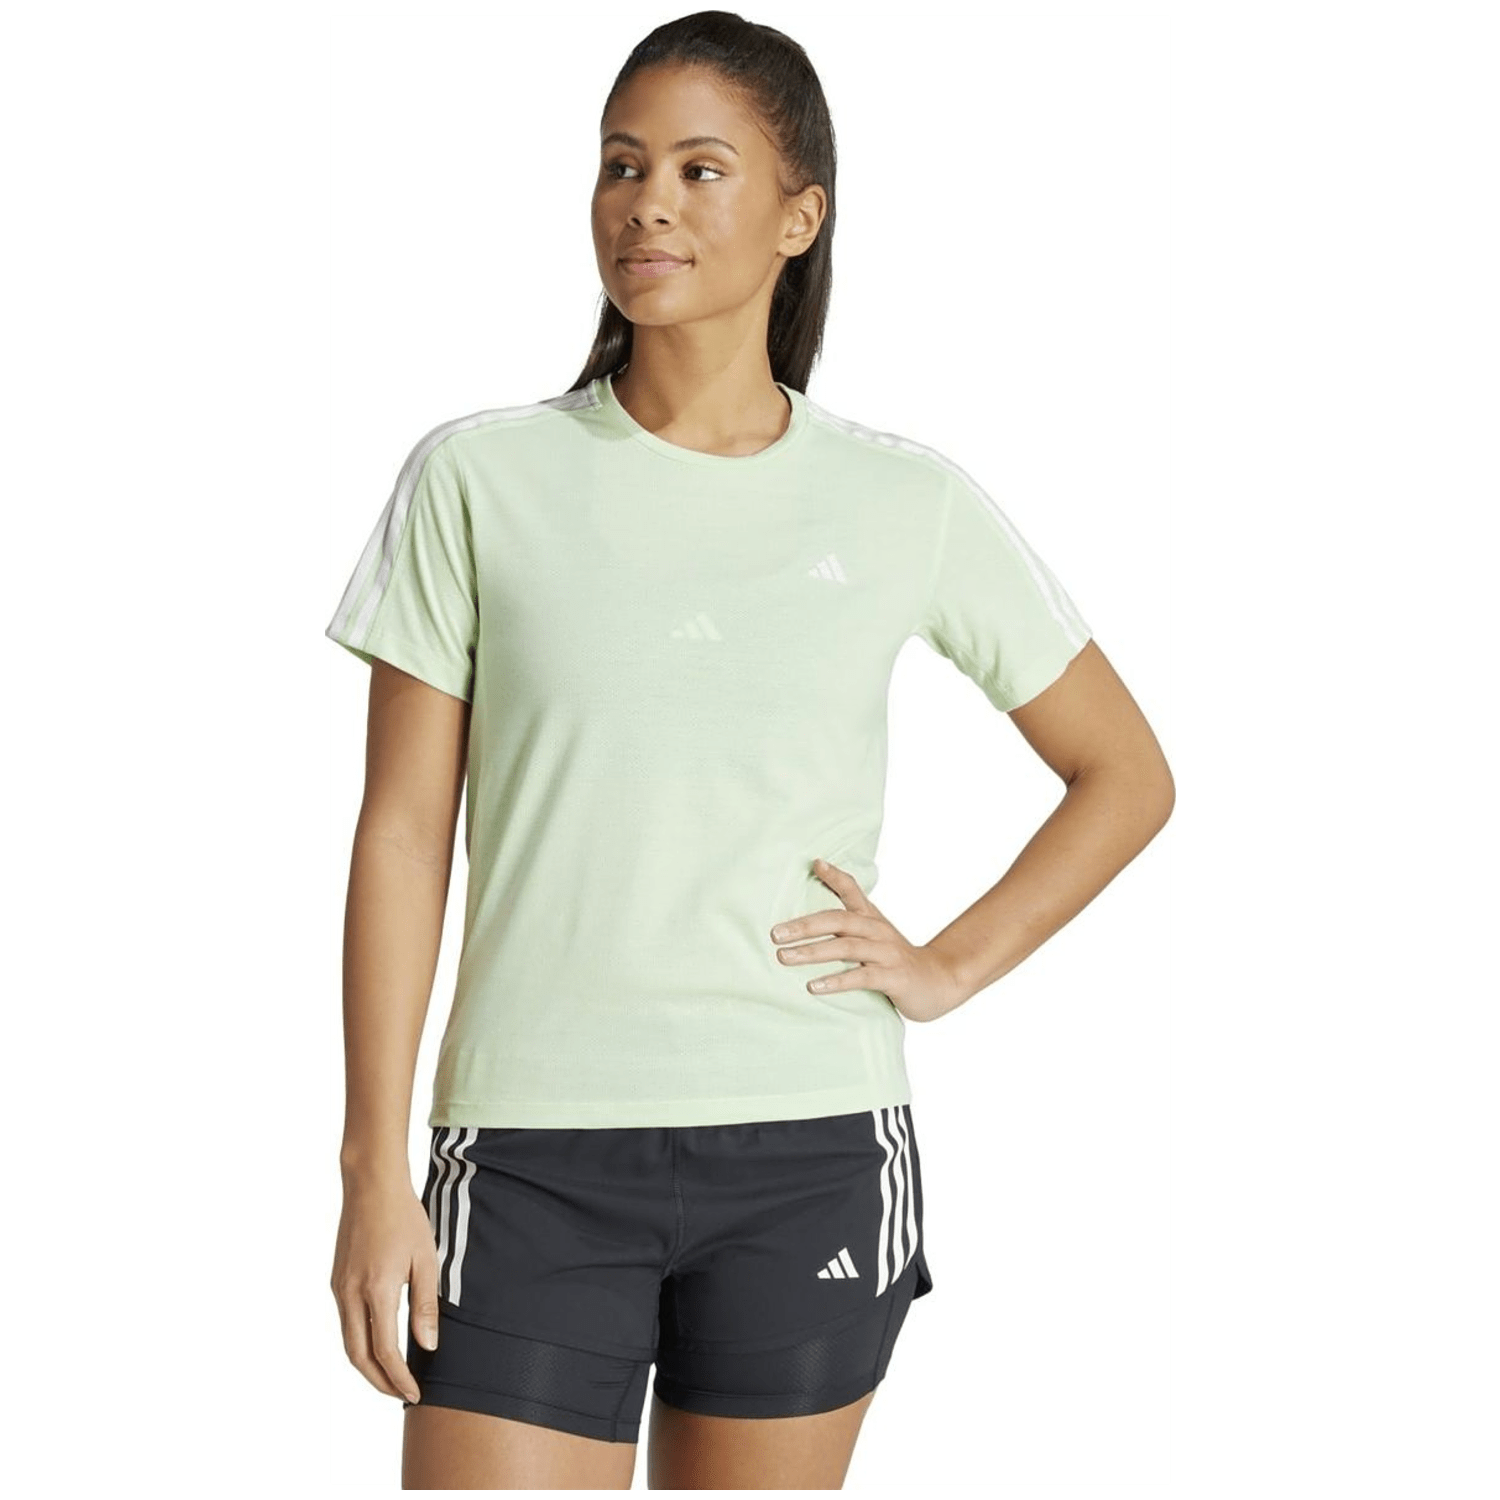 Adidas Own the Run 3 Stripes T-shirt Damen